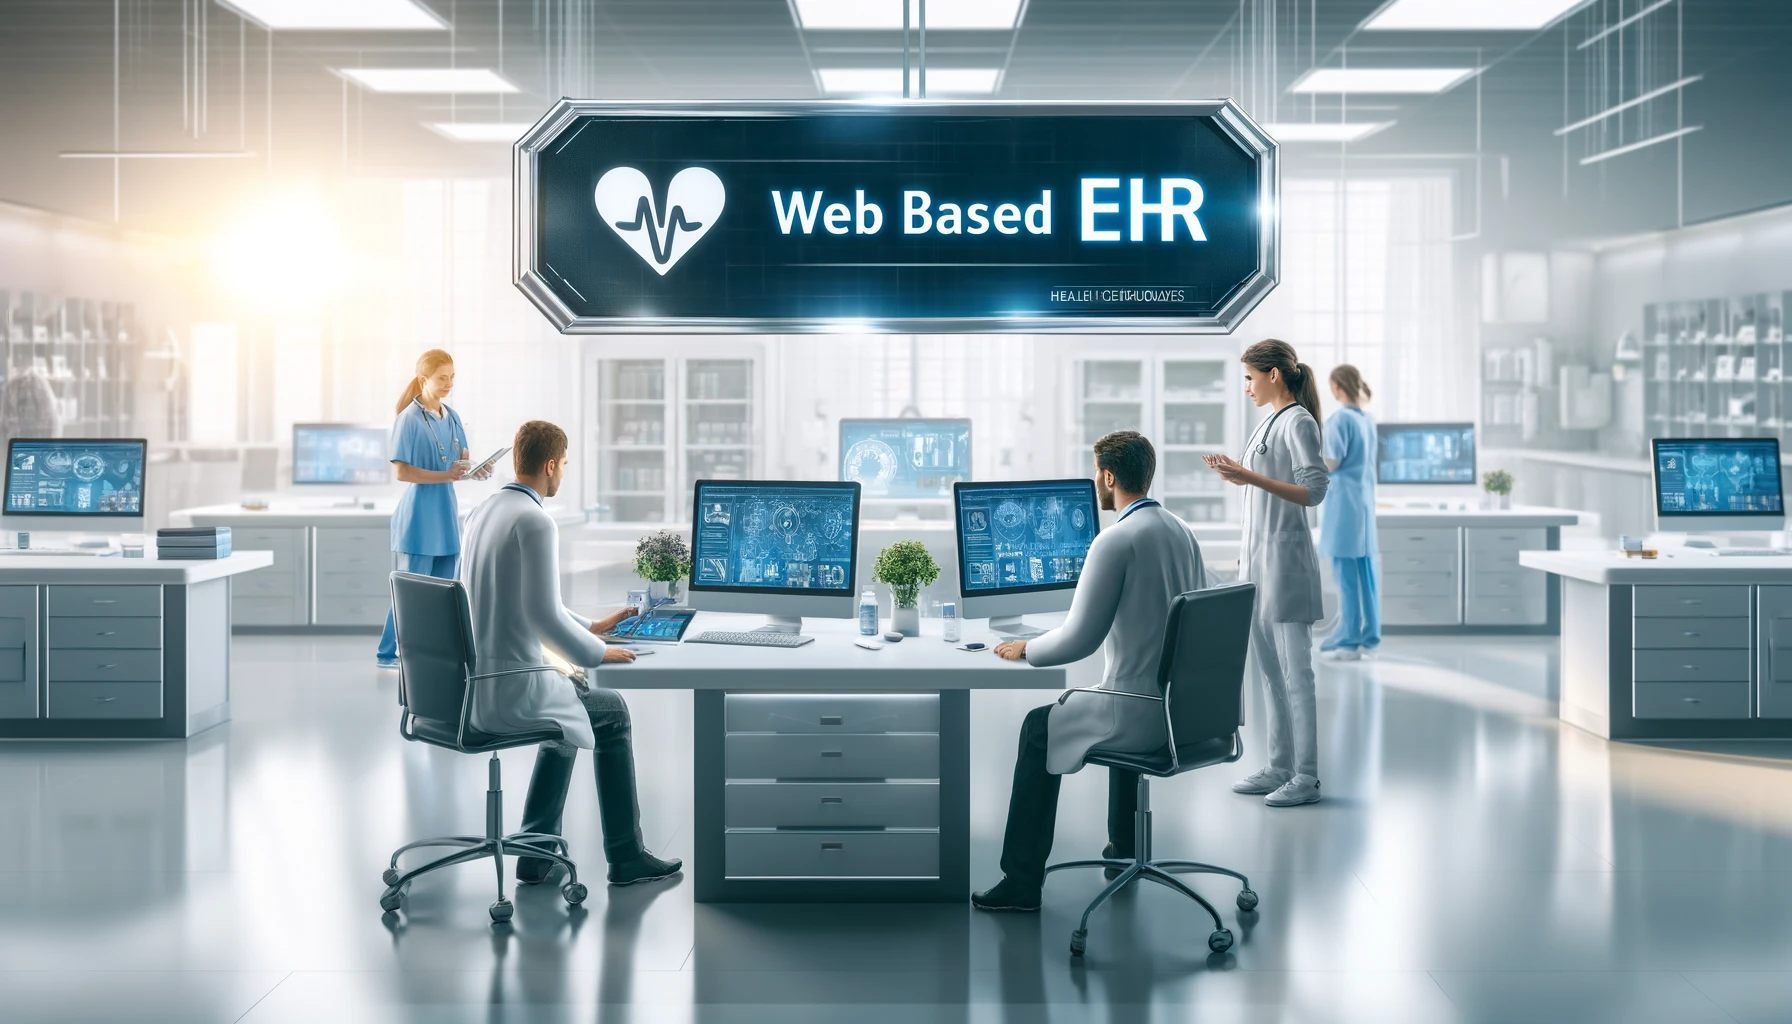 Web-Based Ehr